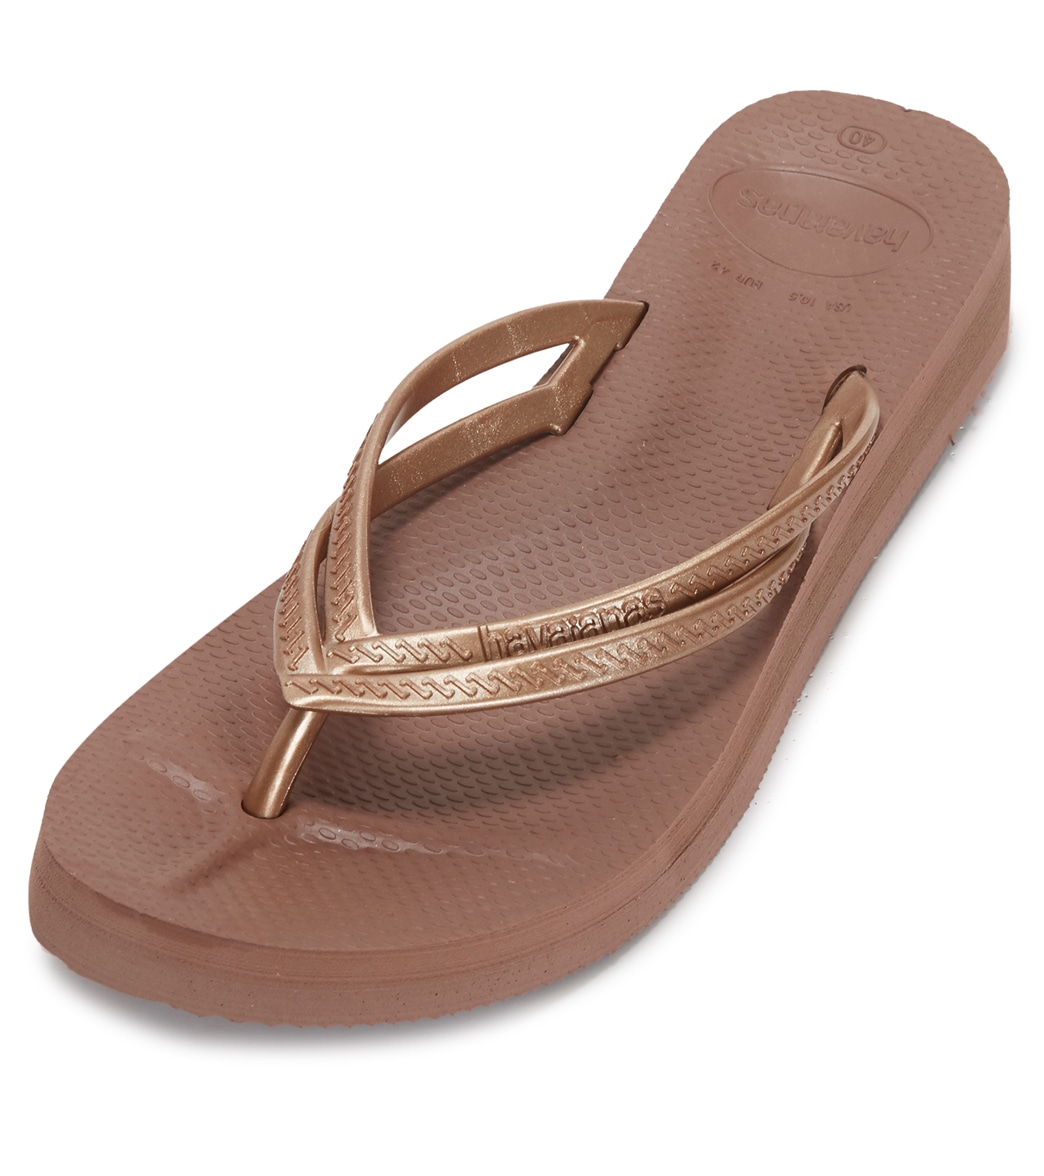 Havaianas Women's Wedges Sandals - Cappucino 41 - Swimoutlet.com